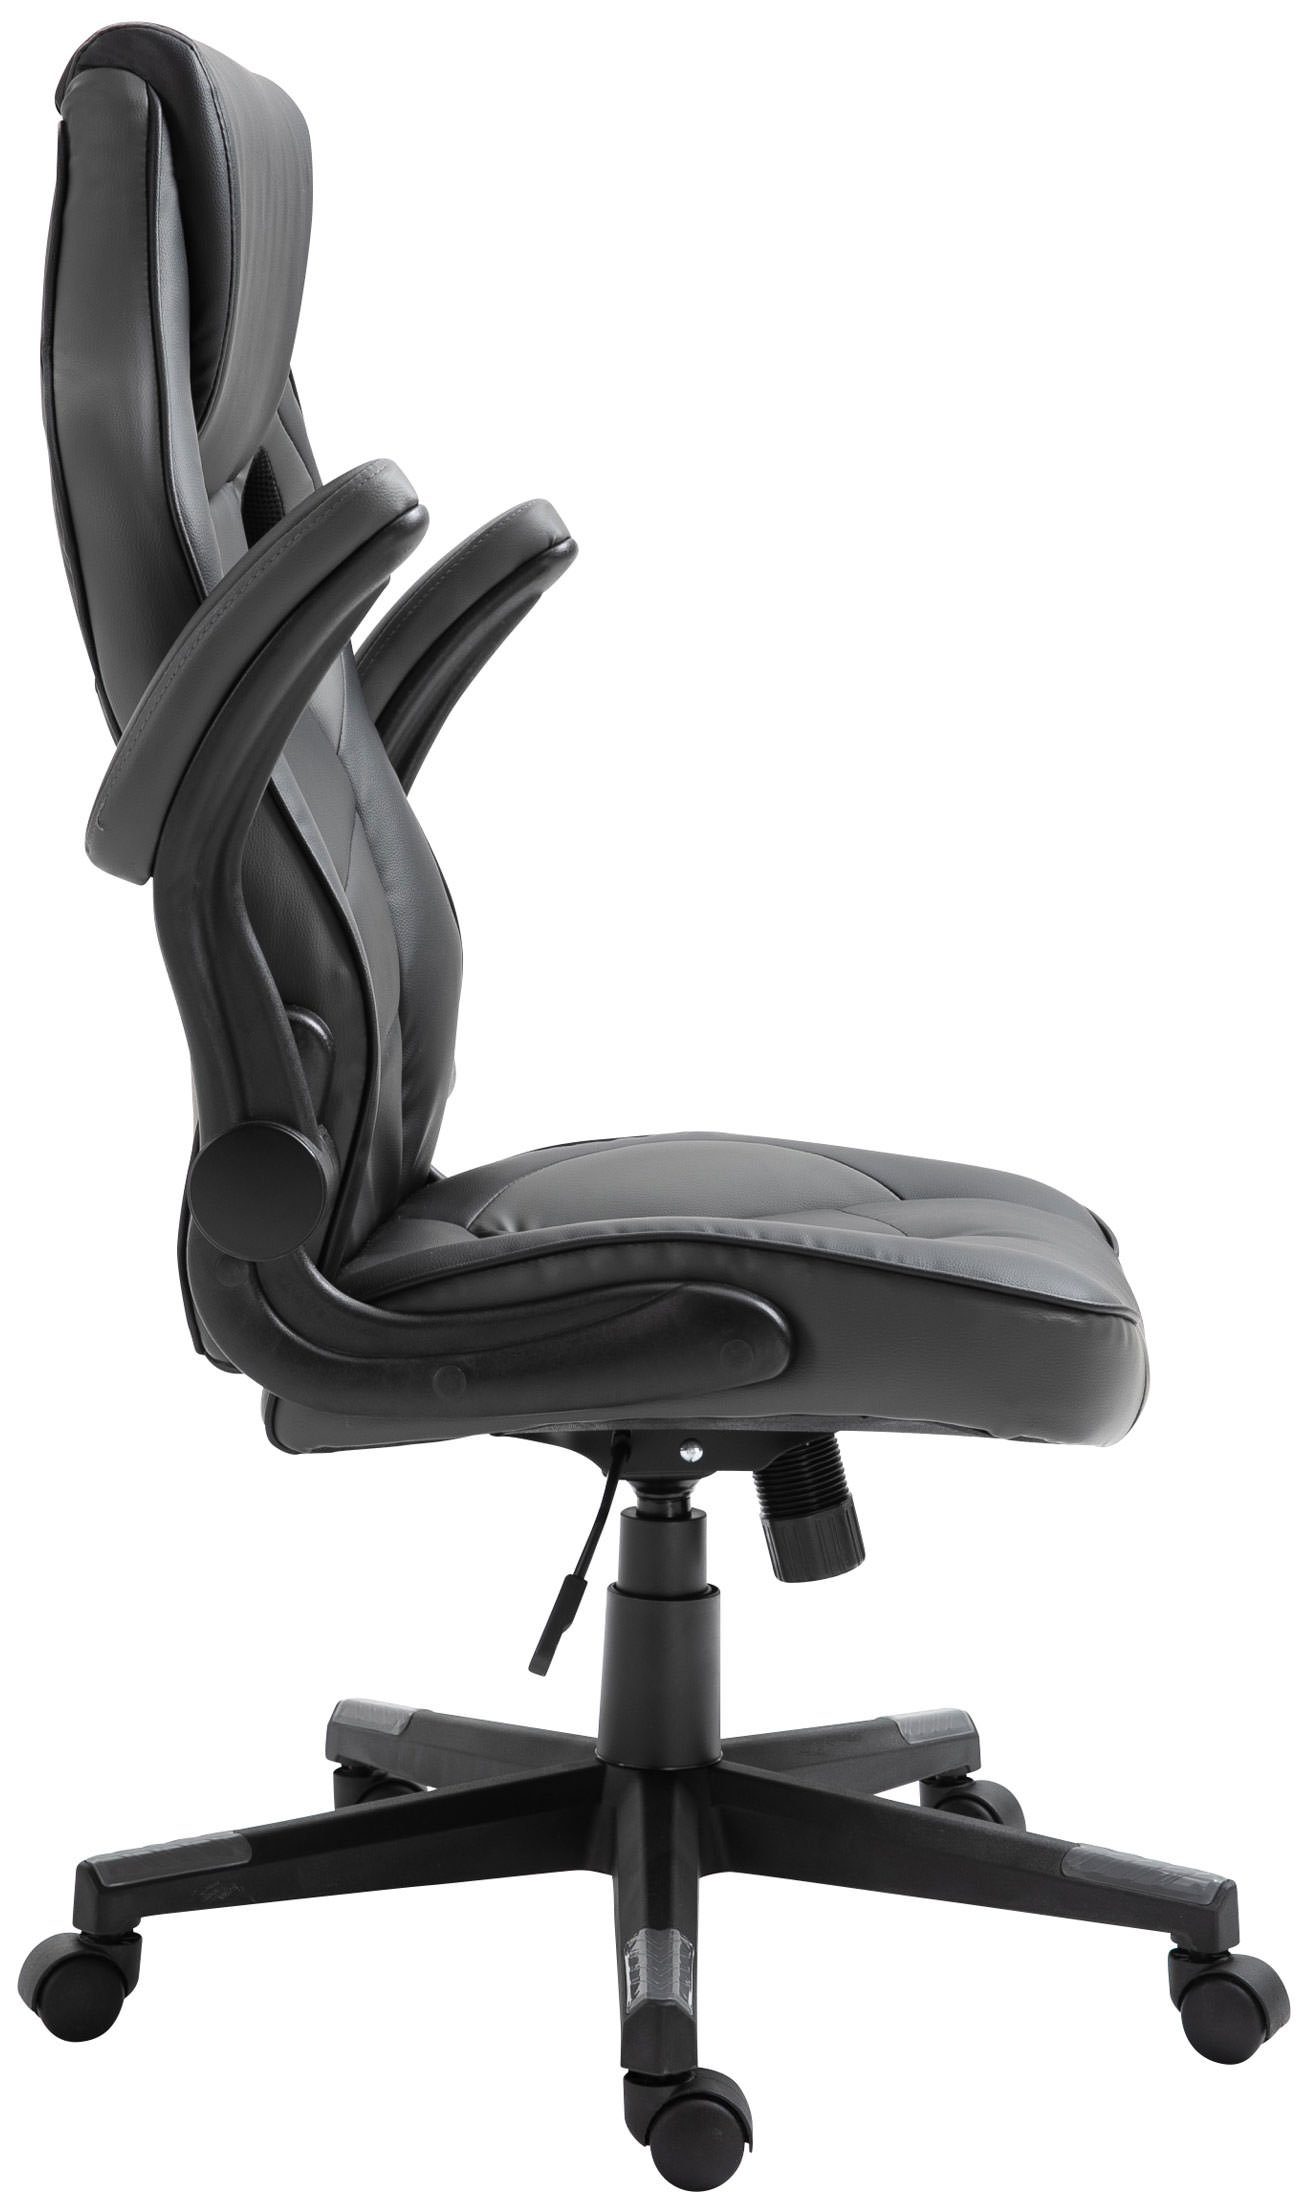 und Kunstleder, Chair schwarz/grau drehbar CLP Omis Gaming höhenverstellbar